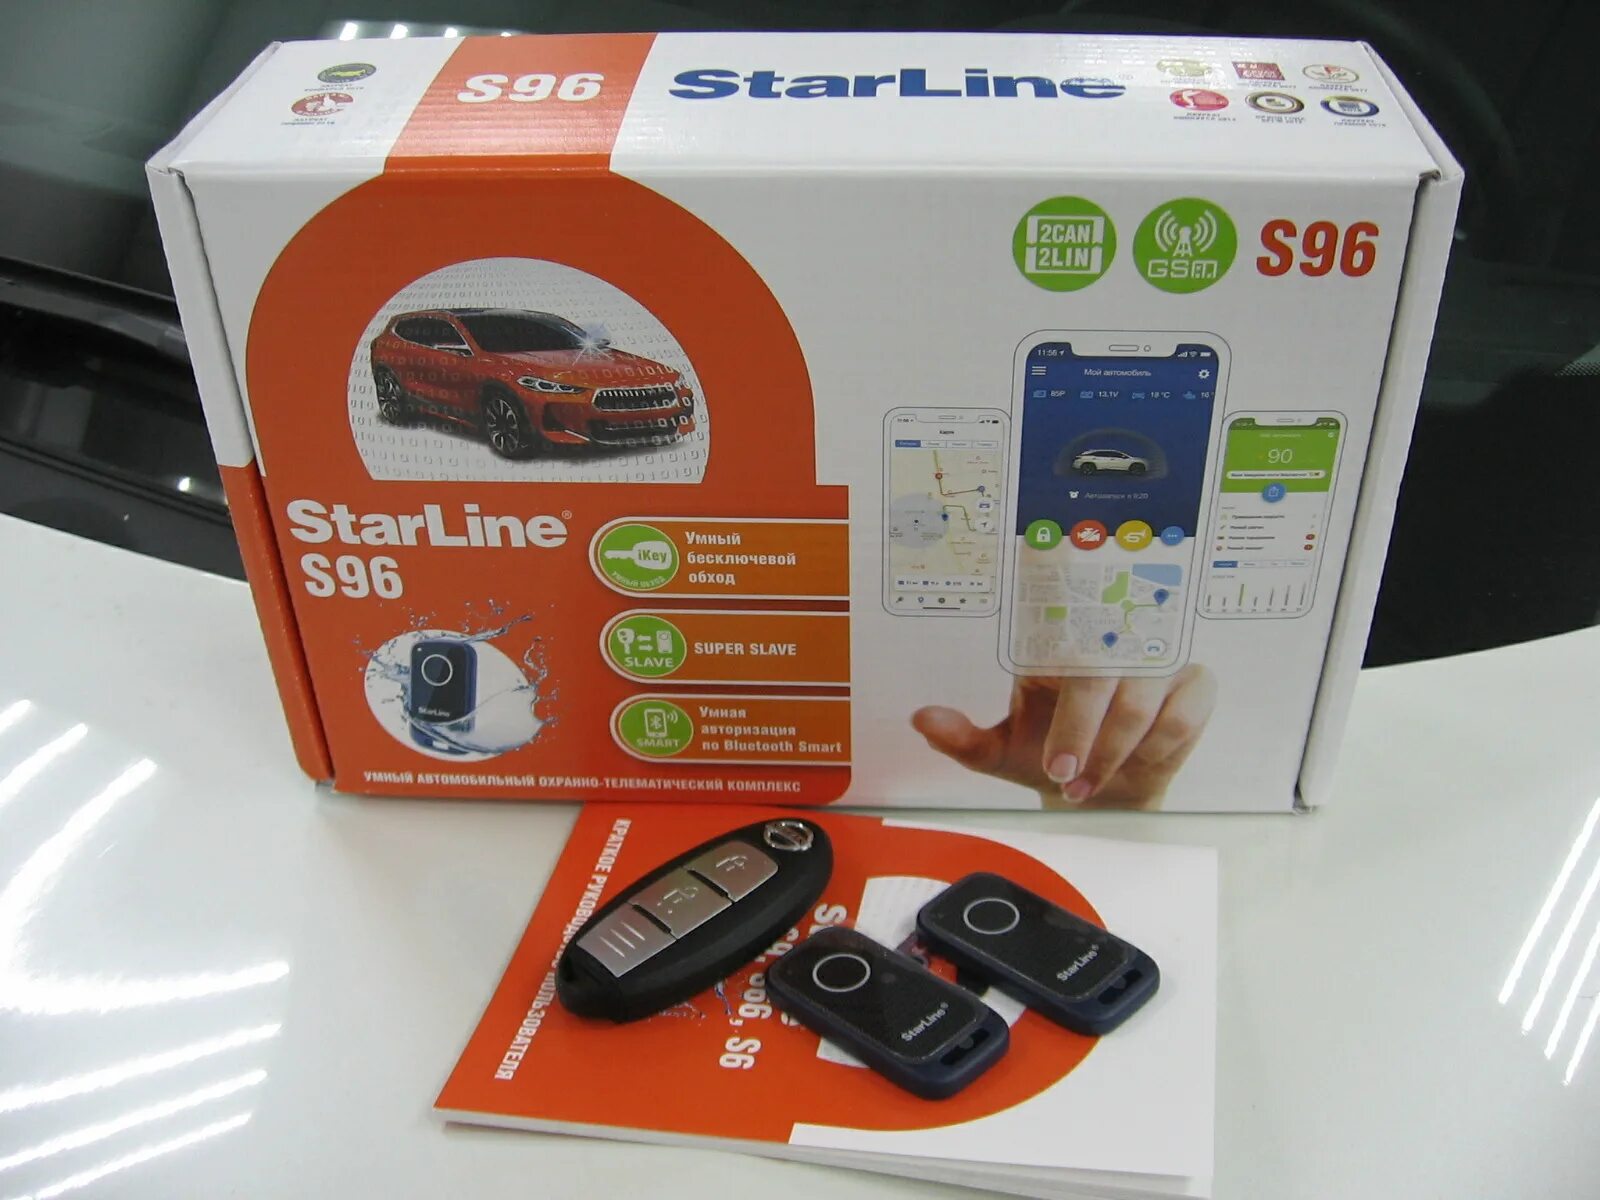 Старлайн е96 gsm. STARLINE s96 GSM комплектация. STARLINE s96 BT GSM комплектация. Автосигнализация STARLINE s96 GSM/GPS ver.2. STARLINE s96 v2 комплектация.